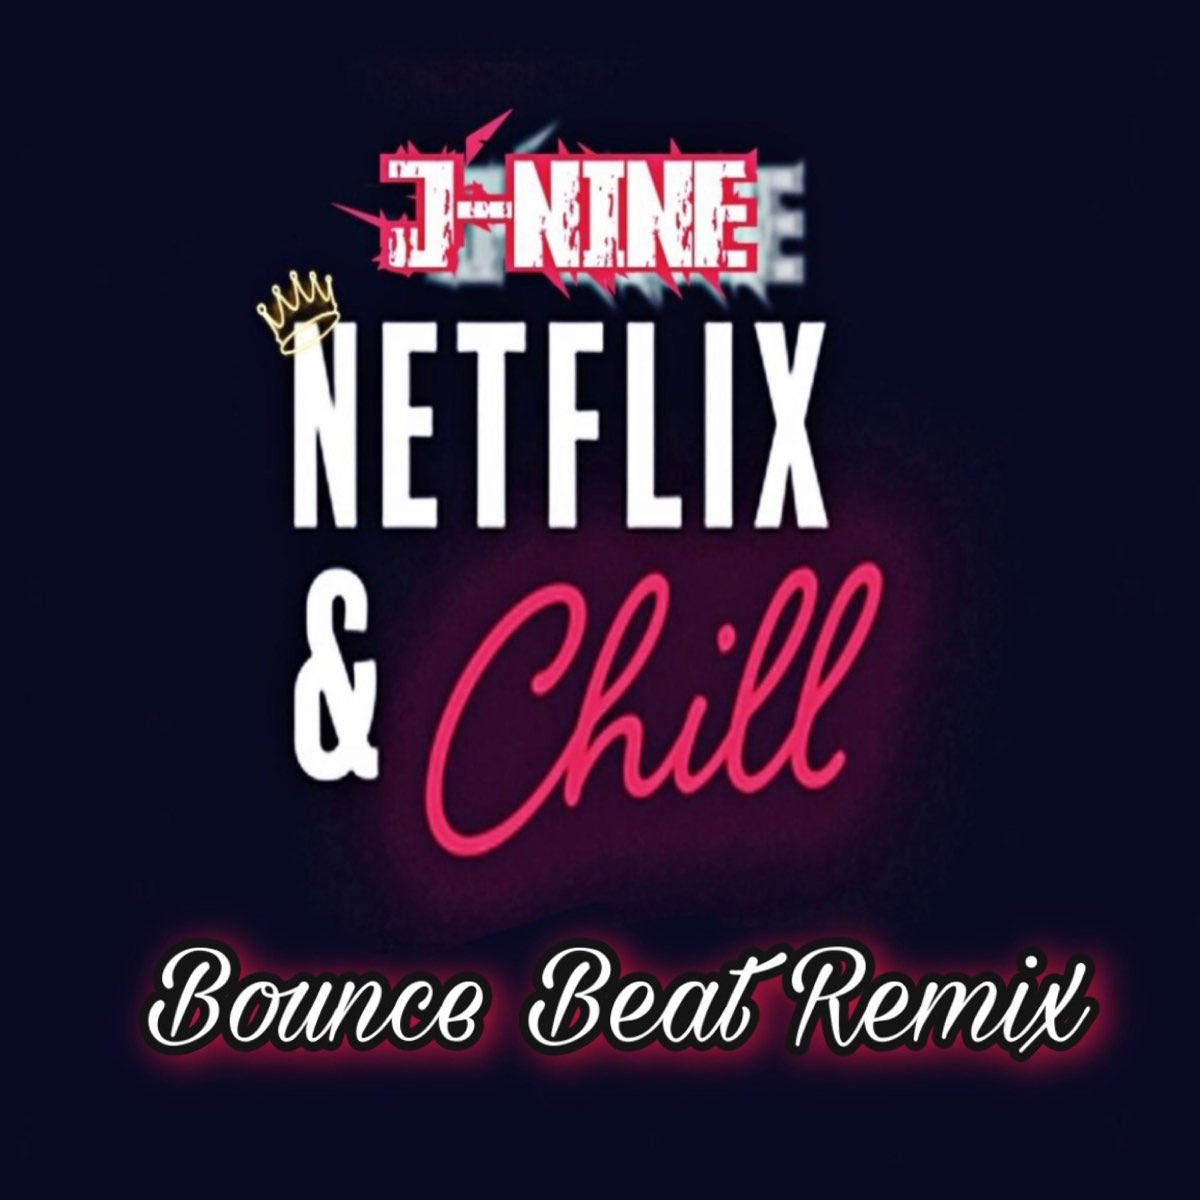 Netflix & Chill (Bounce Beat Remix) [Bounce Beat Remix] - Single by J-Nine  on Apple Music